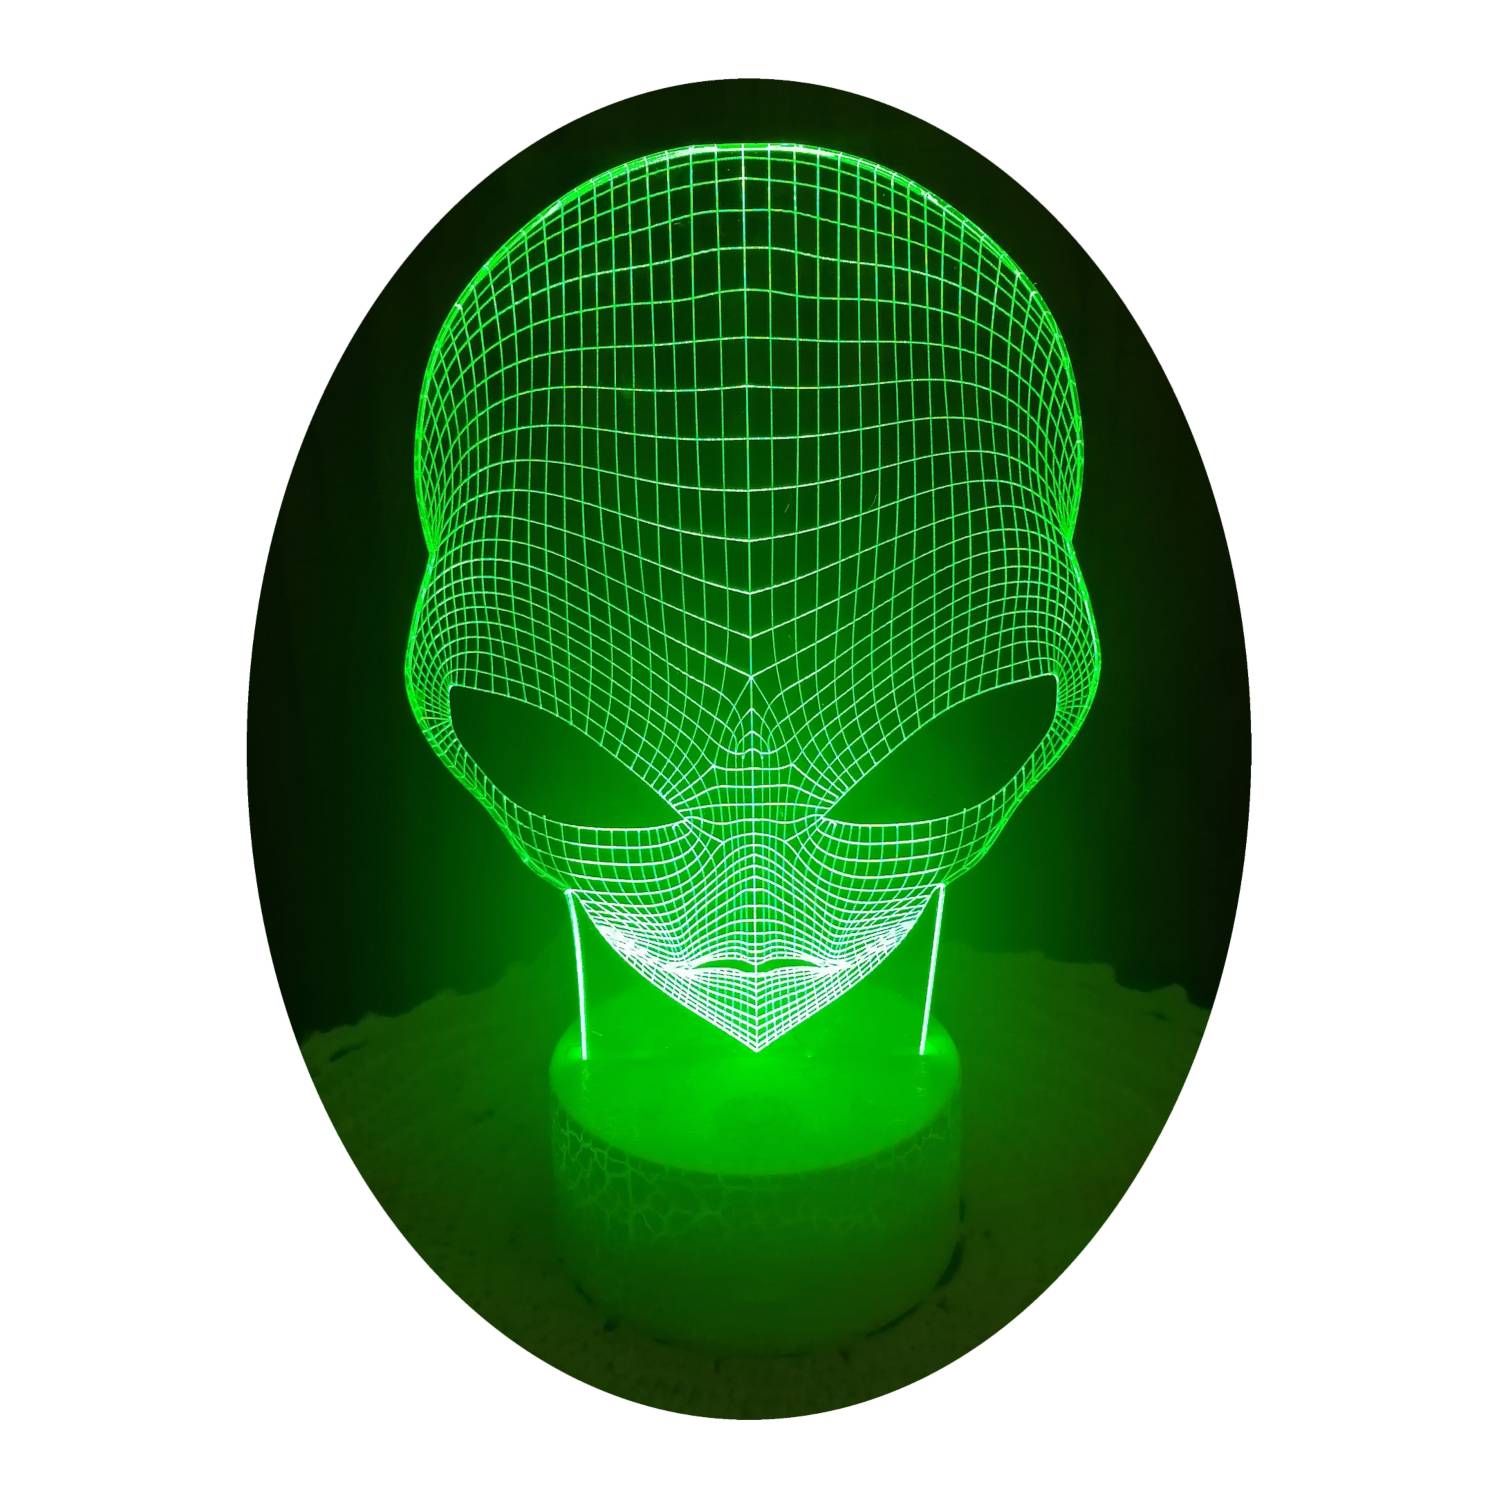 GENERICO Marciano En Lampara 3D 7 Colores Led Cara de Alien Extraterrestre  